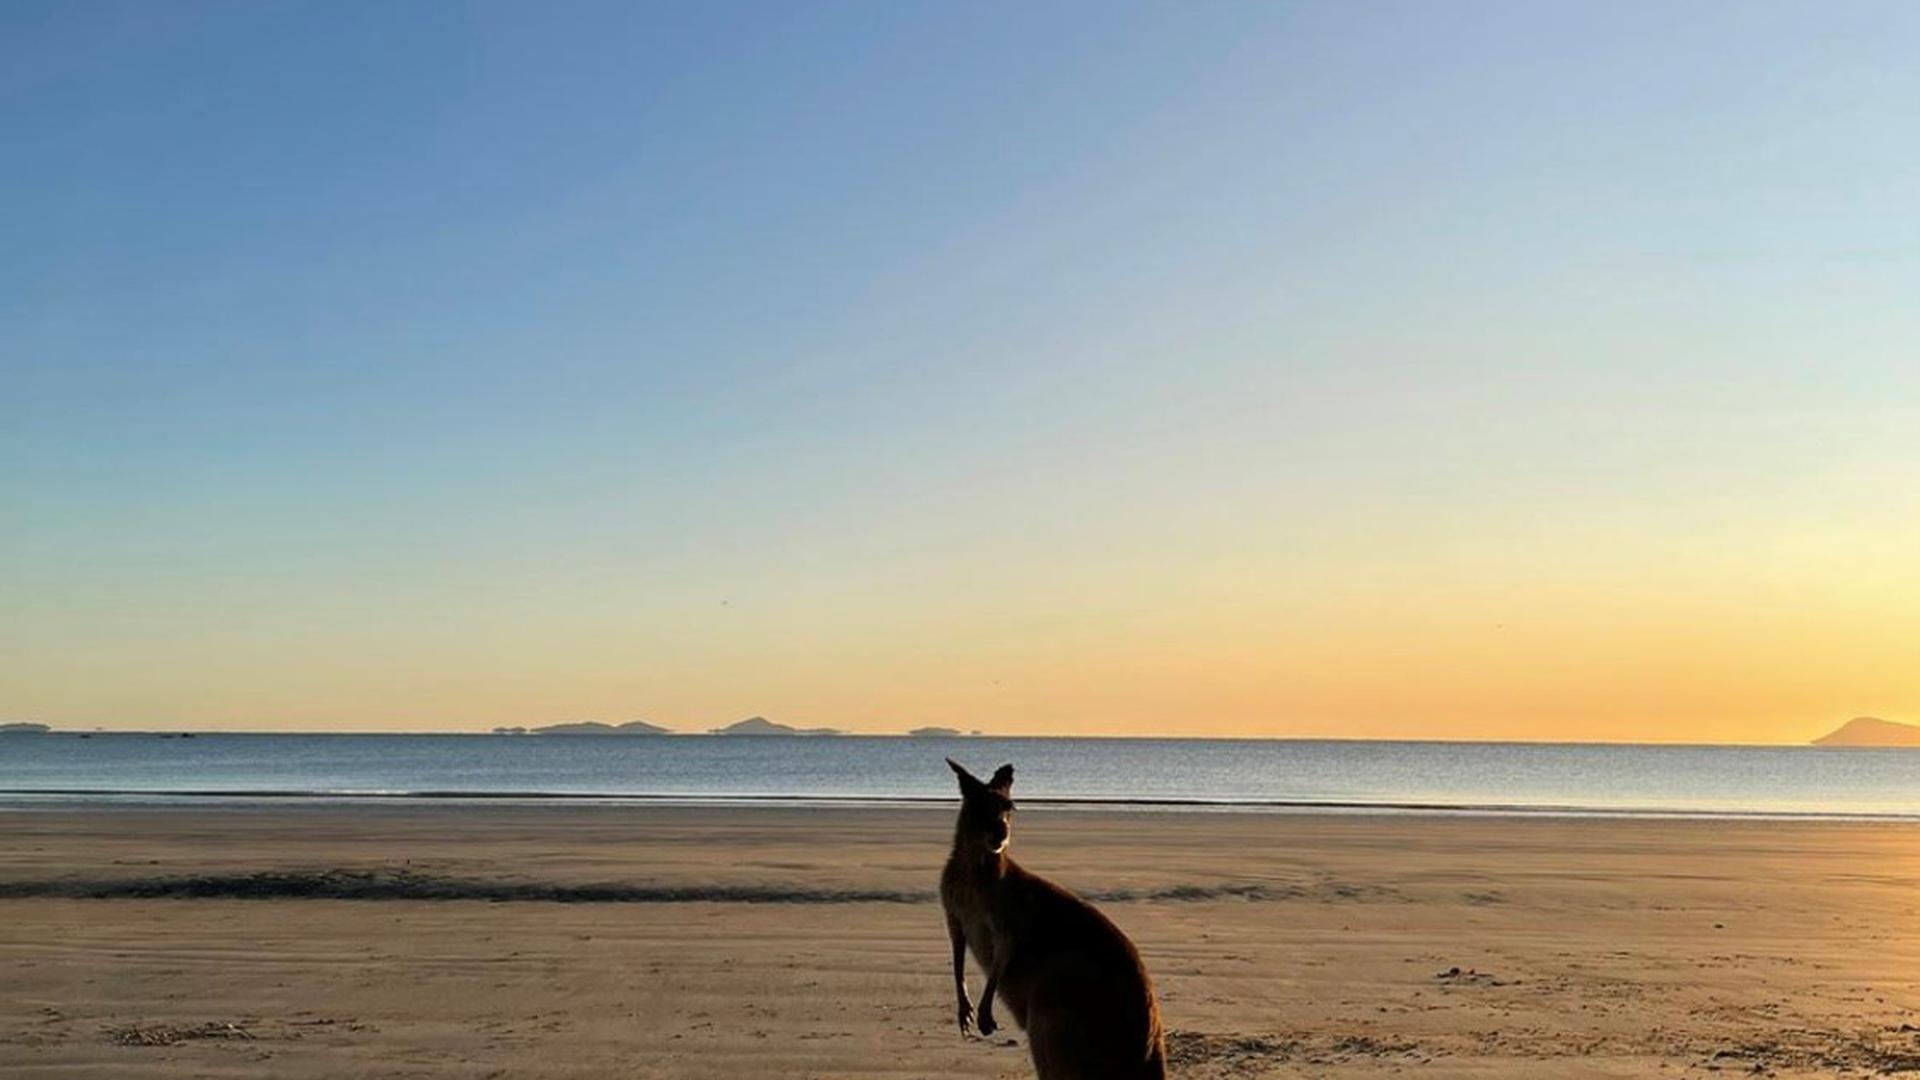 Känguru am Cape Hillsborough in Australien von Daniel Wendland aus Bretten.
